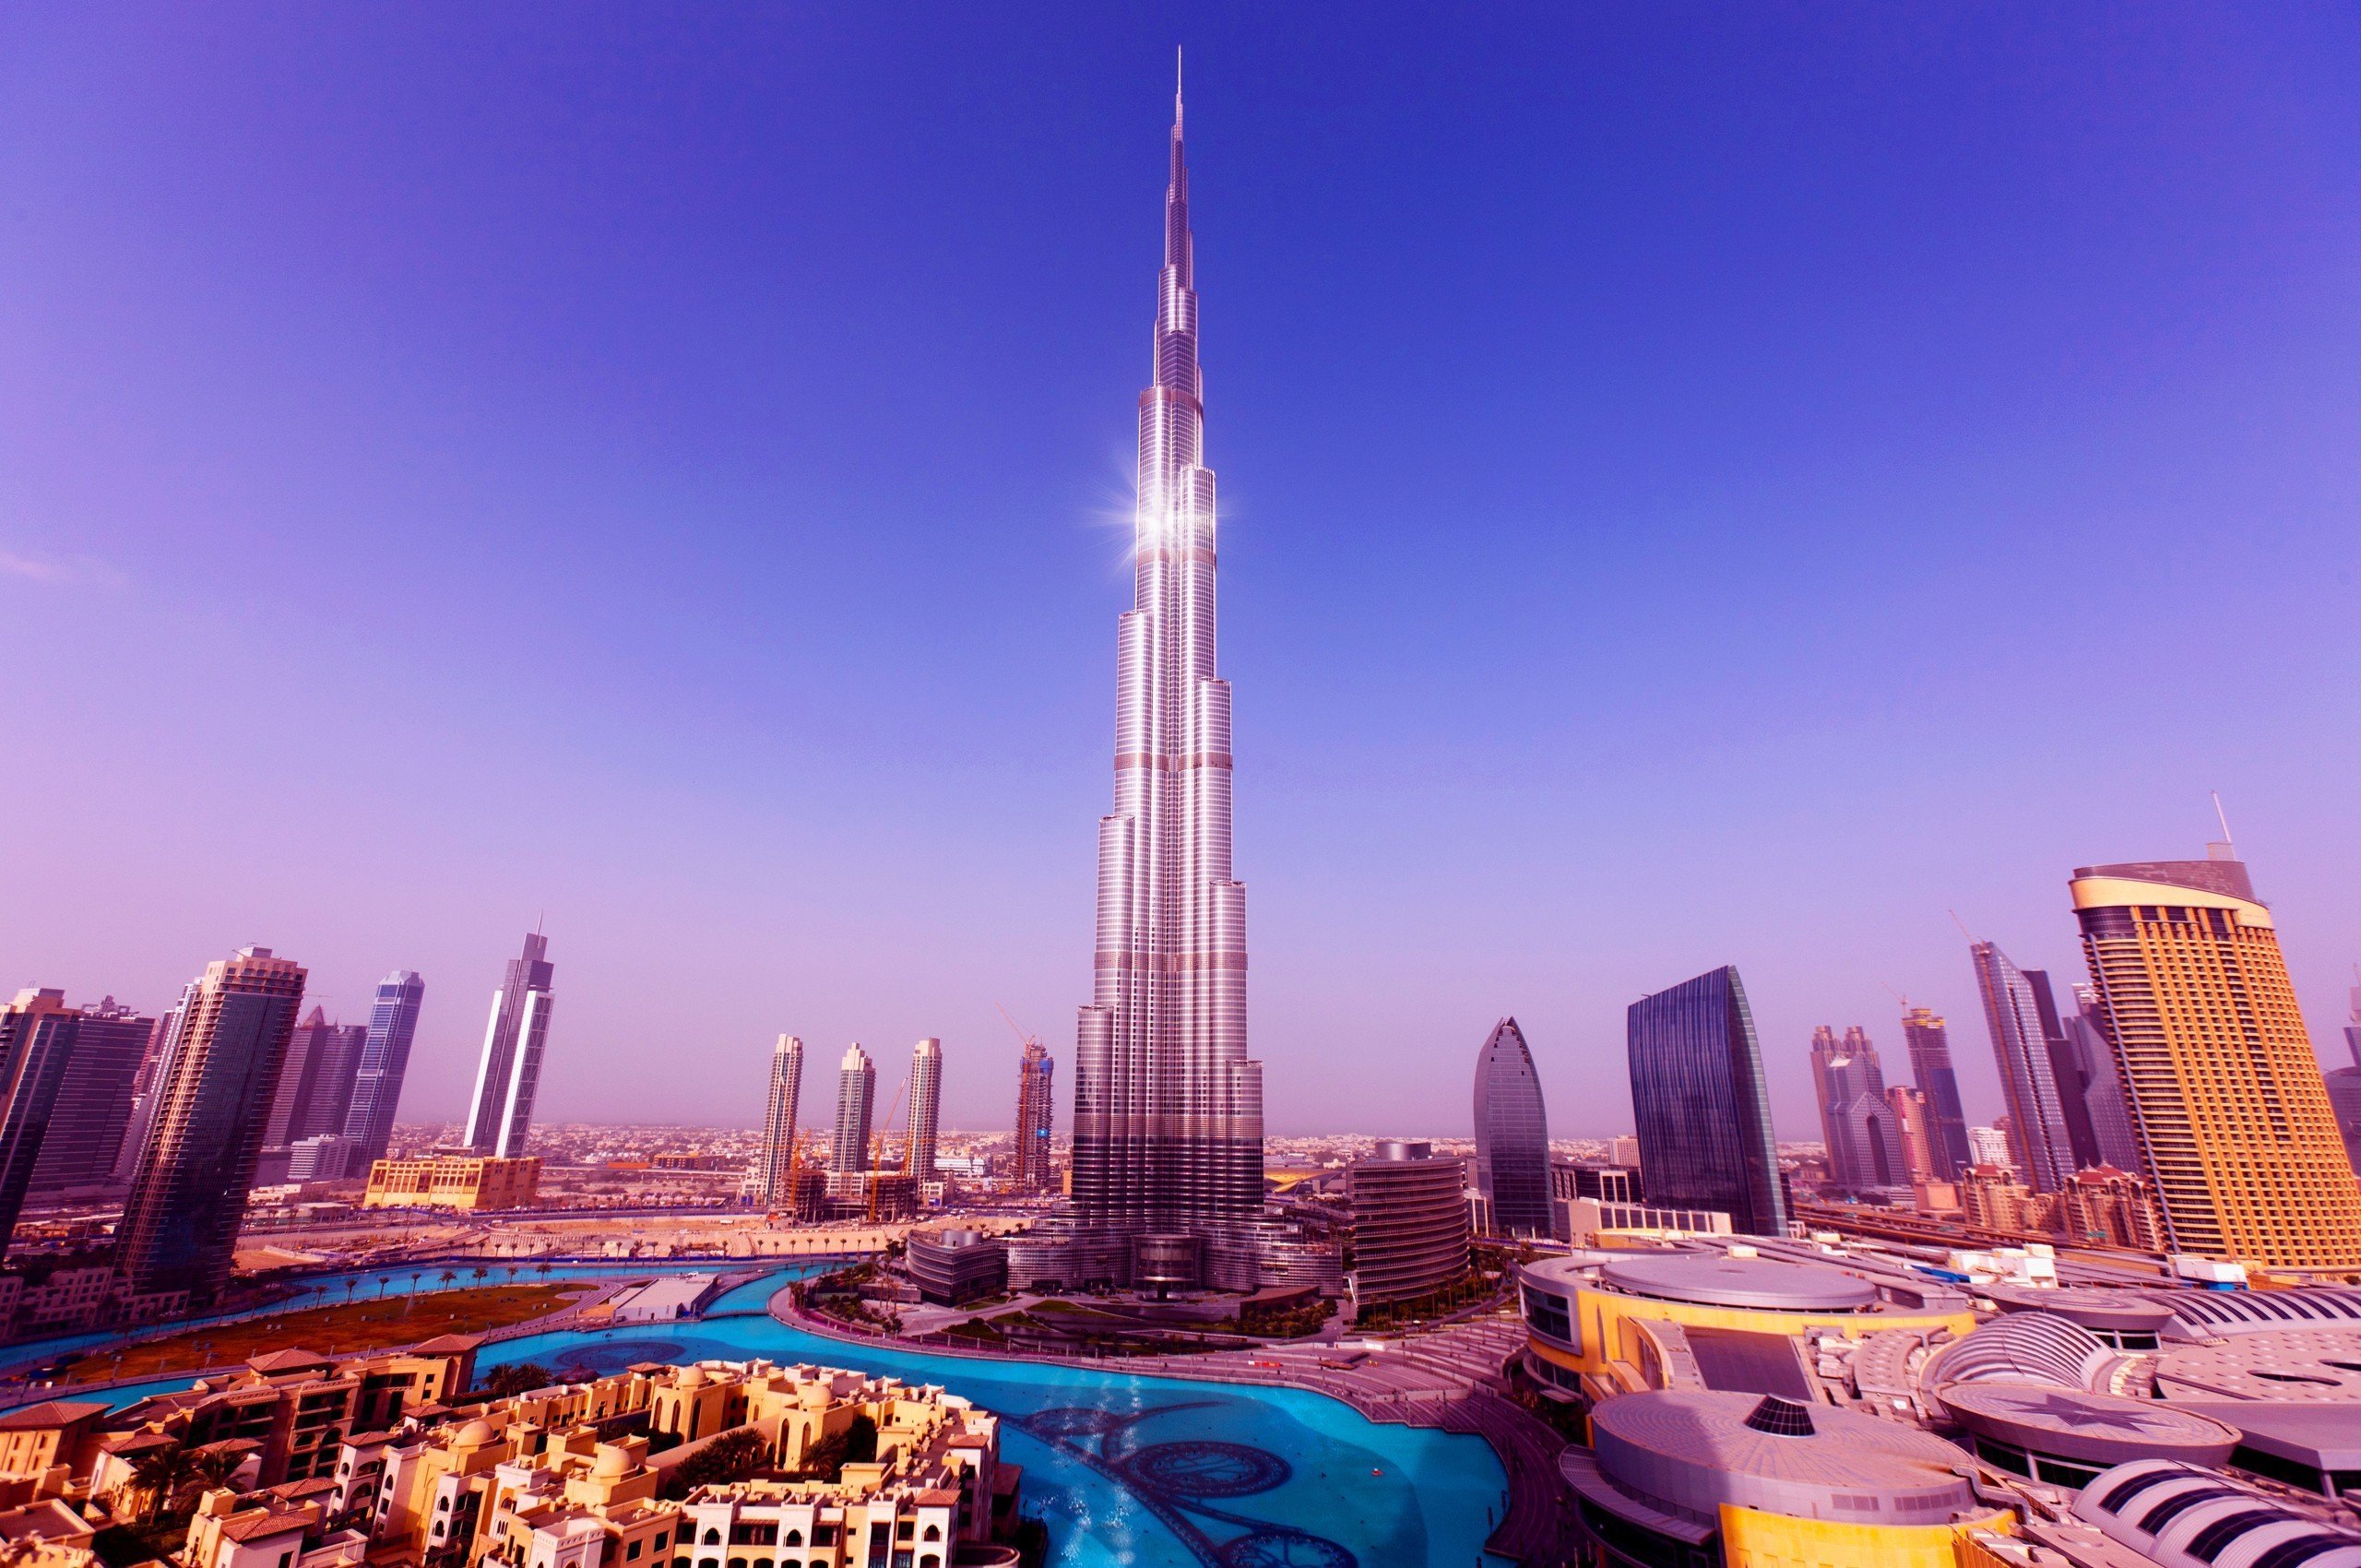 Uae cities. Бурдж-Халифа Дубай. Башня Бурдж Халифа в Дубае. Небоскреб Бурдж-Халифа (ОАЭ, Дубай). Бурдб кзалифа.